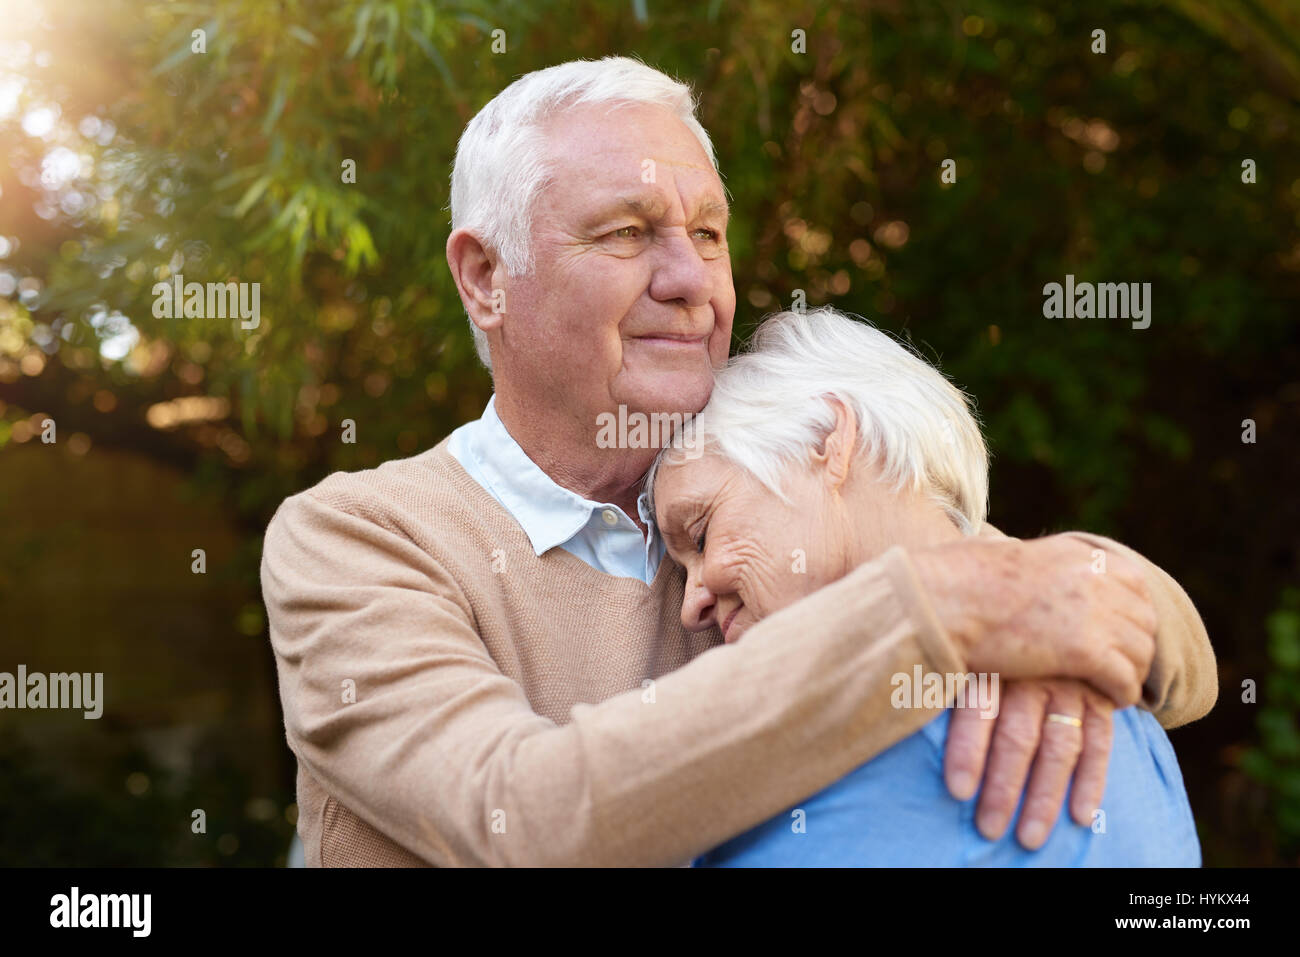 Smiling senior homme serrant affectueusement sa femme à l'extérieur Banque D'Images